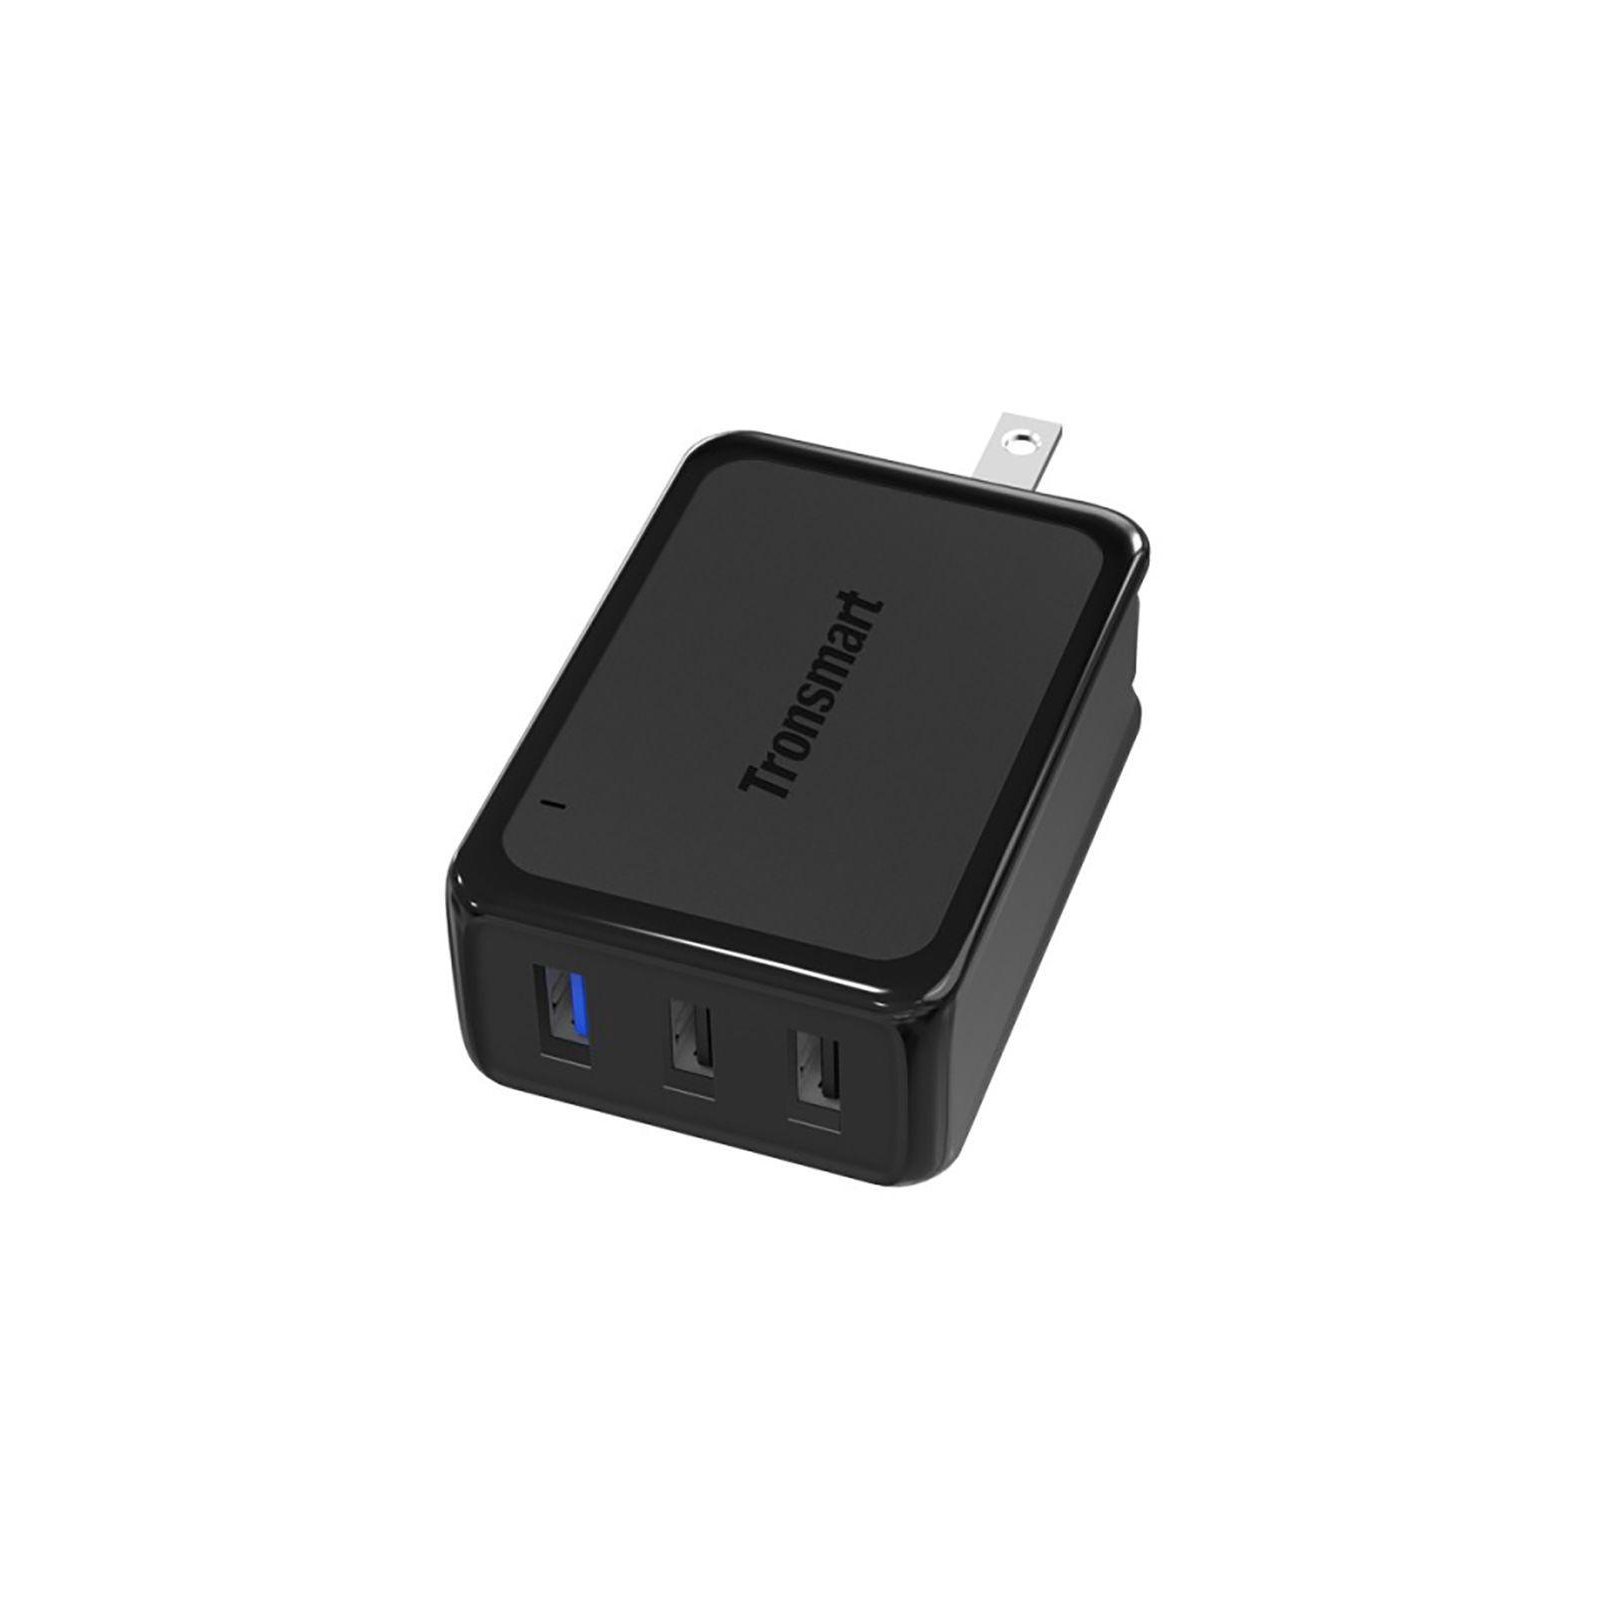 Зарядное устройство Tronsmart W3PTA 42W Quick Charge 3.0 USB Wall Charger Black (210778) изображение 3